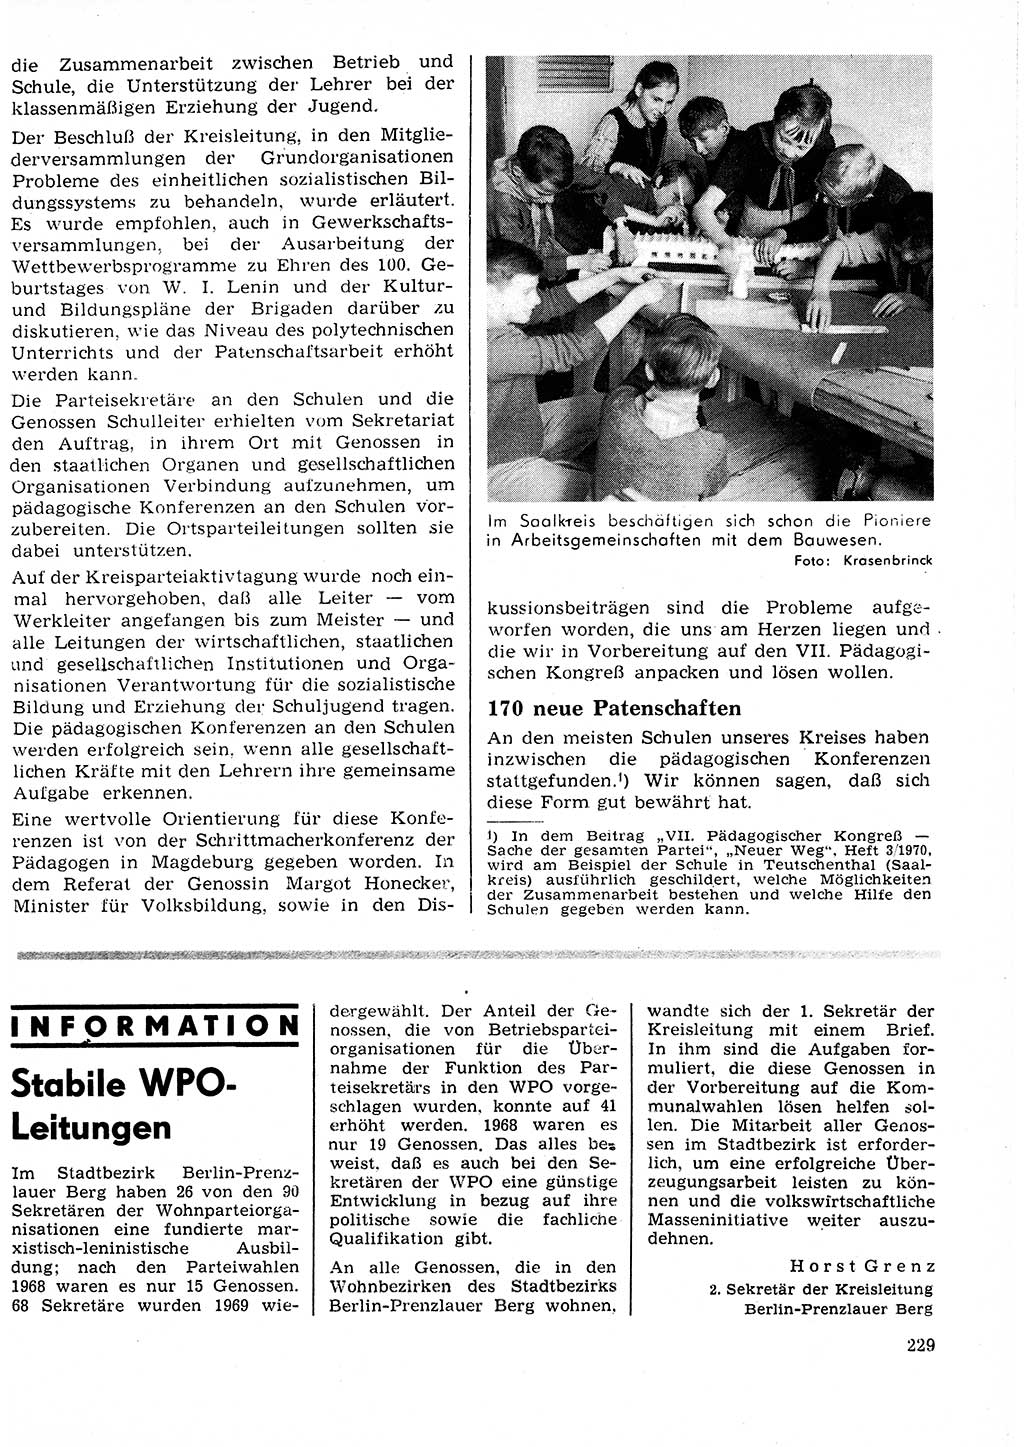 Neuer Weg (NW), Organ des Zentralkomitees (ZK) der SED (Sozialistische Einheitspartei Deutschlands) für Fragen des Parteilebens, 25. Jahrgang [Deutsche Demokratische Republik (DDR)] 1970, Seite 229 (NW ZK SED DDR 1970, S. 229)